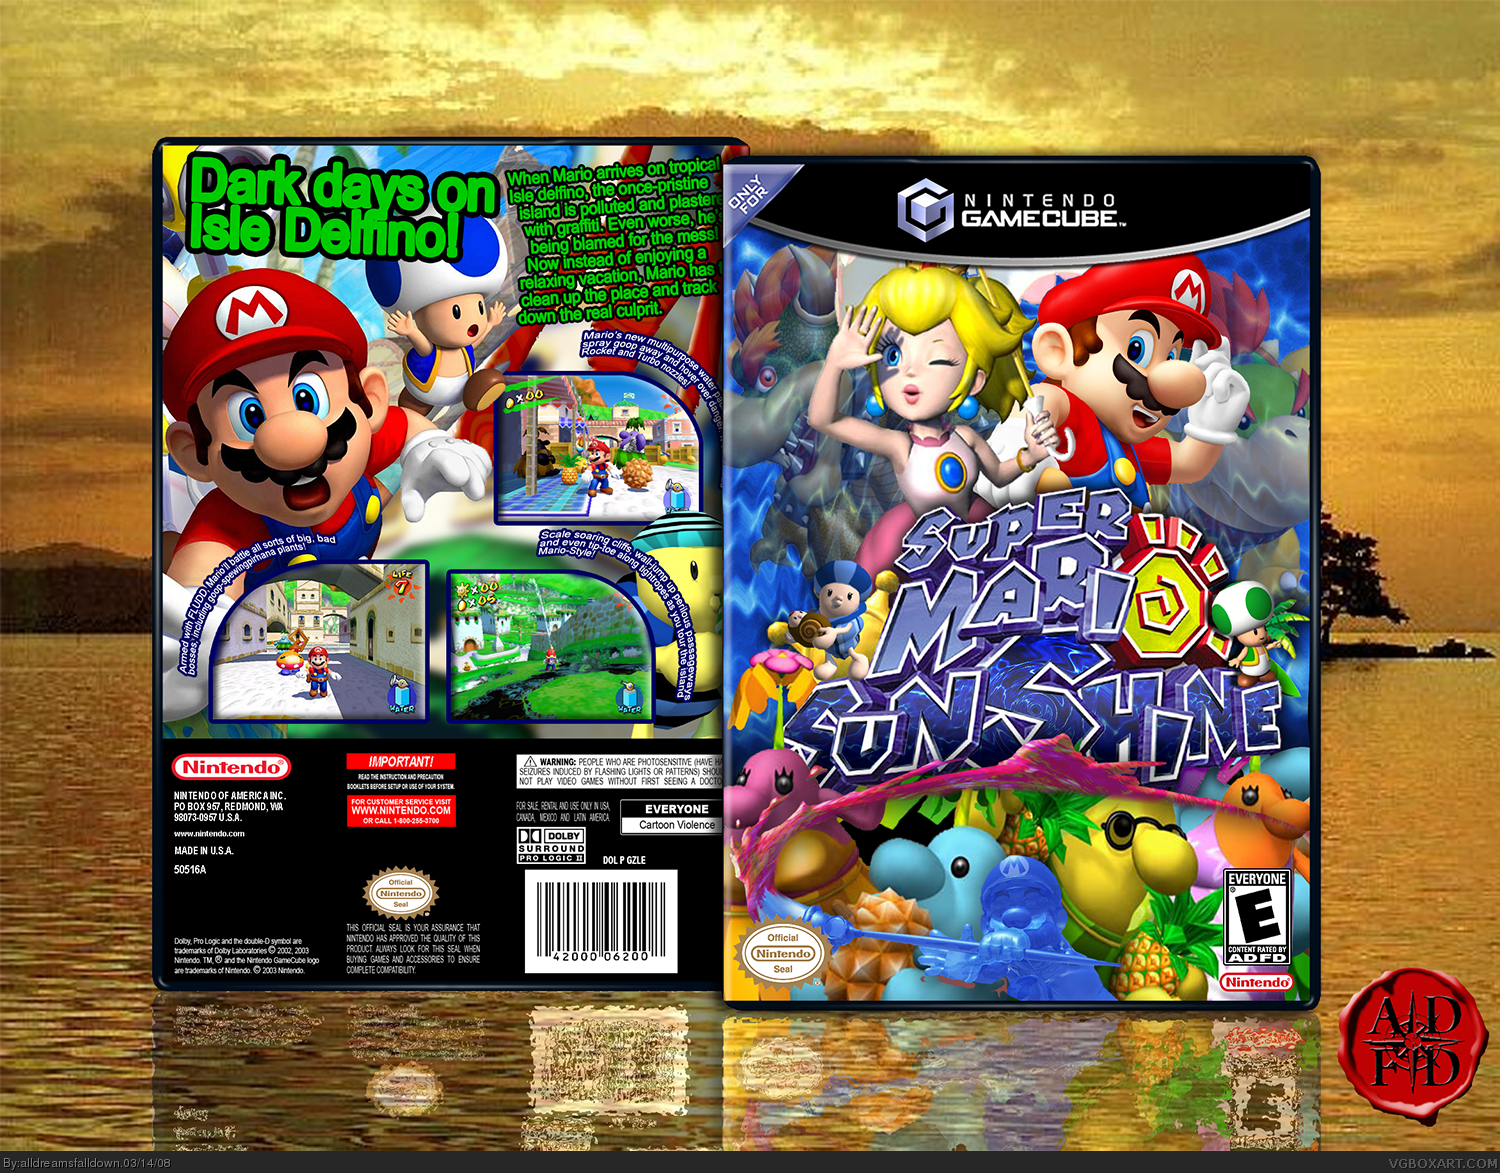 Super Mario Sunshine box cover